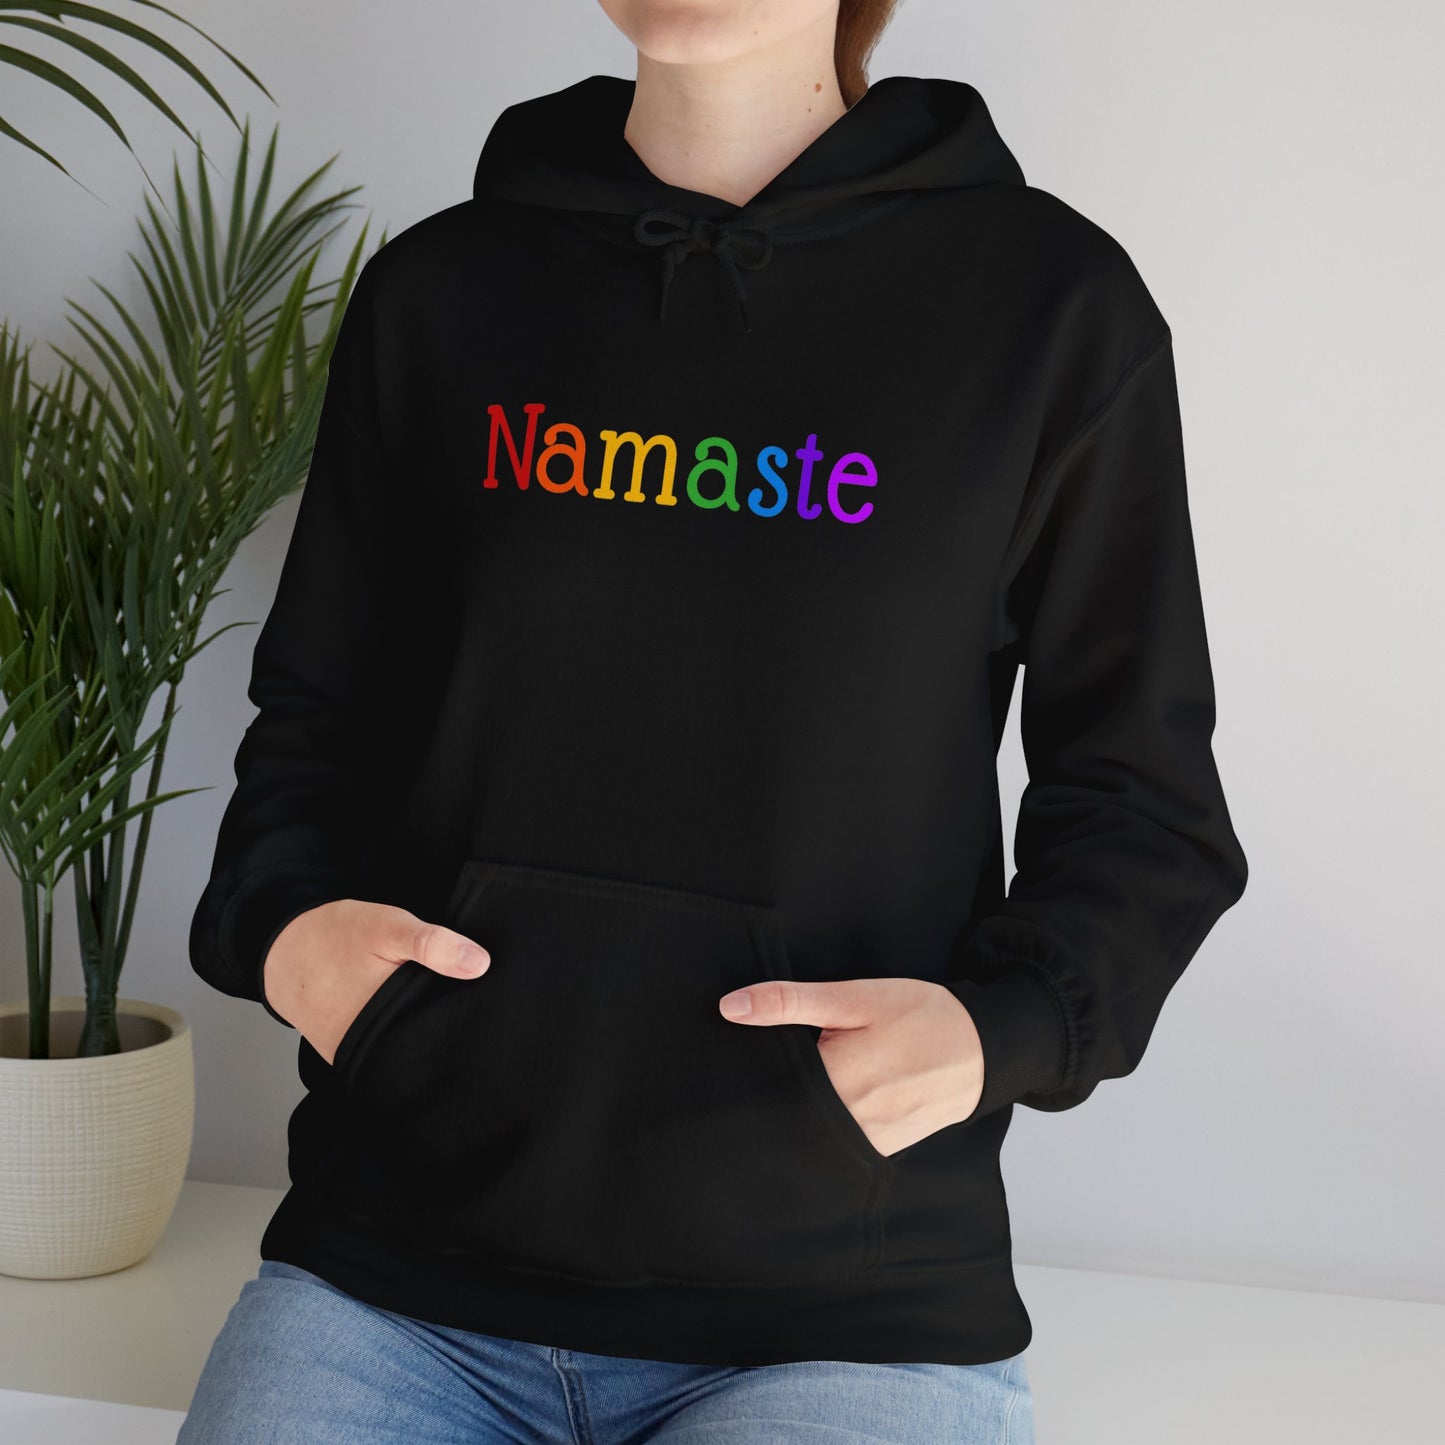 Namaste Hooded Sweatshirt